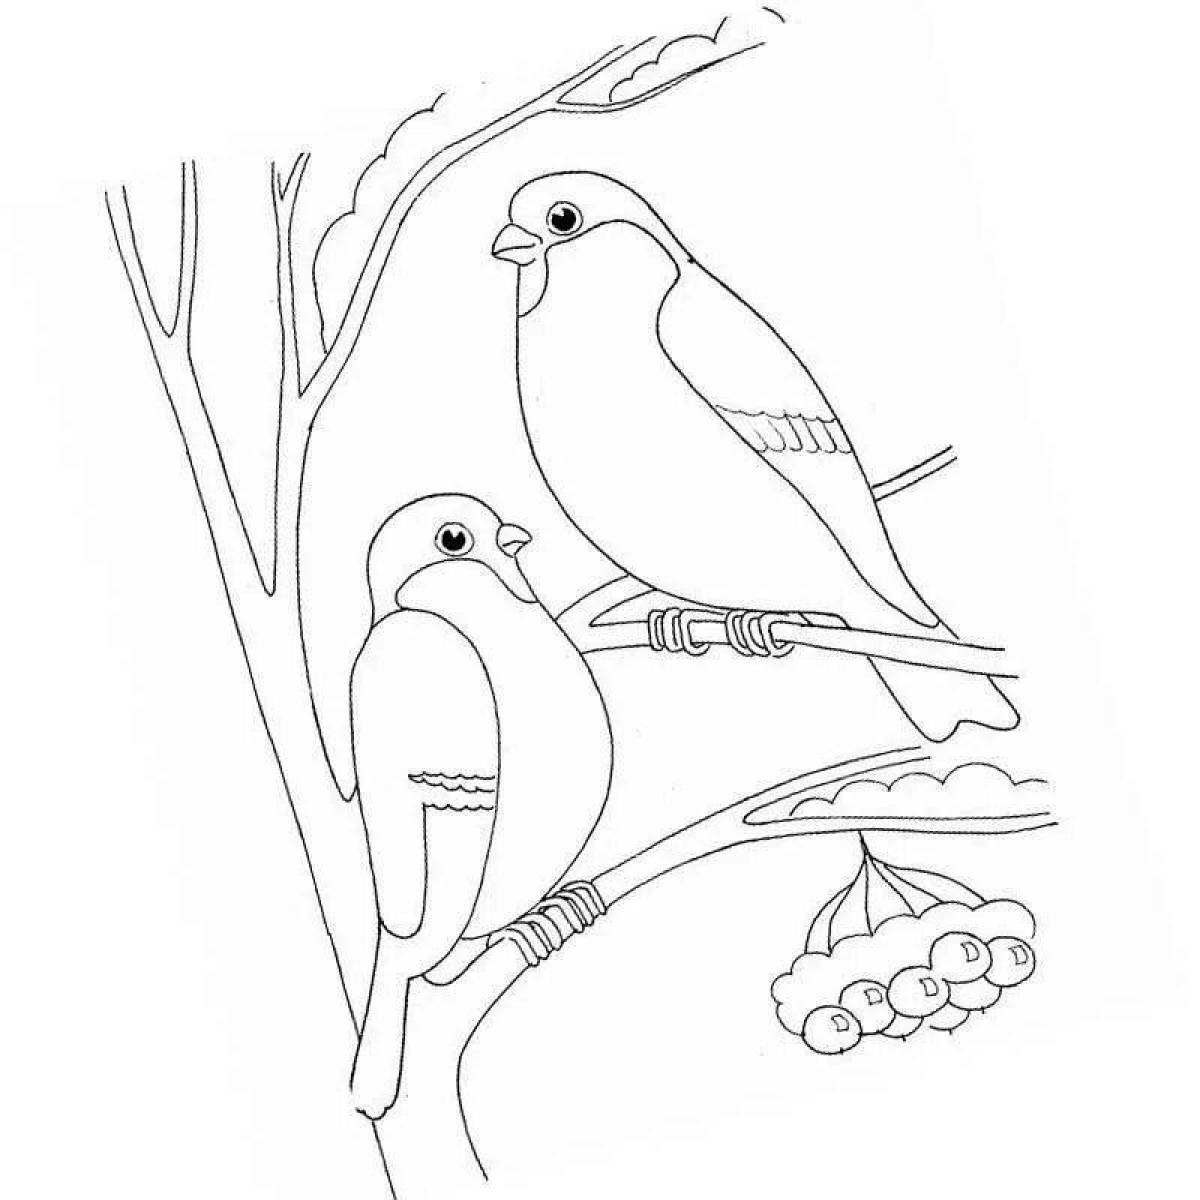 Playful winter birds coloring book for preschoolers